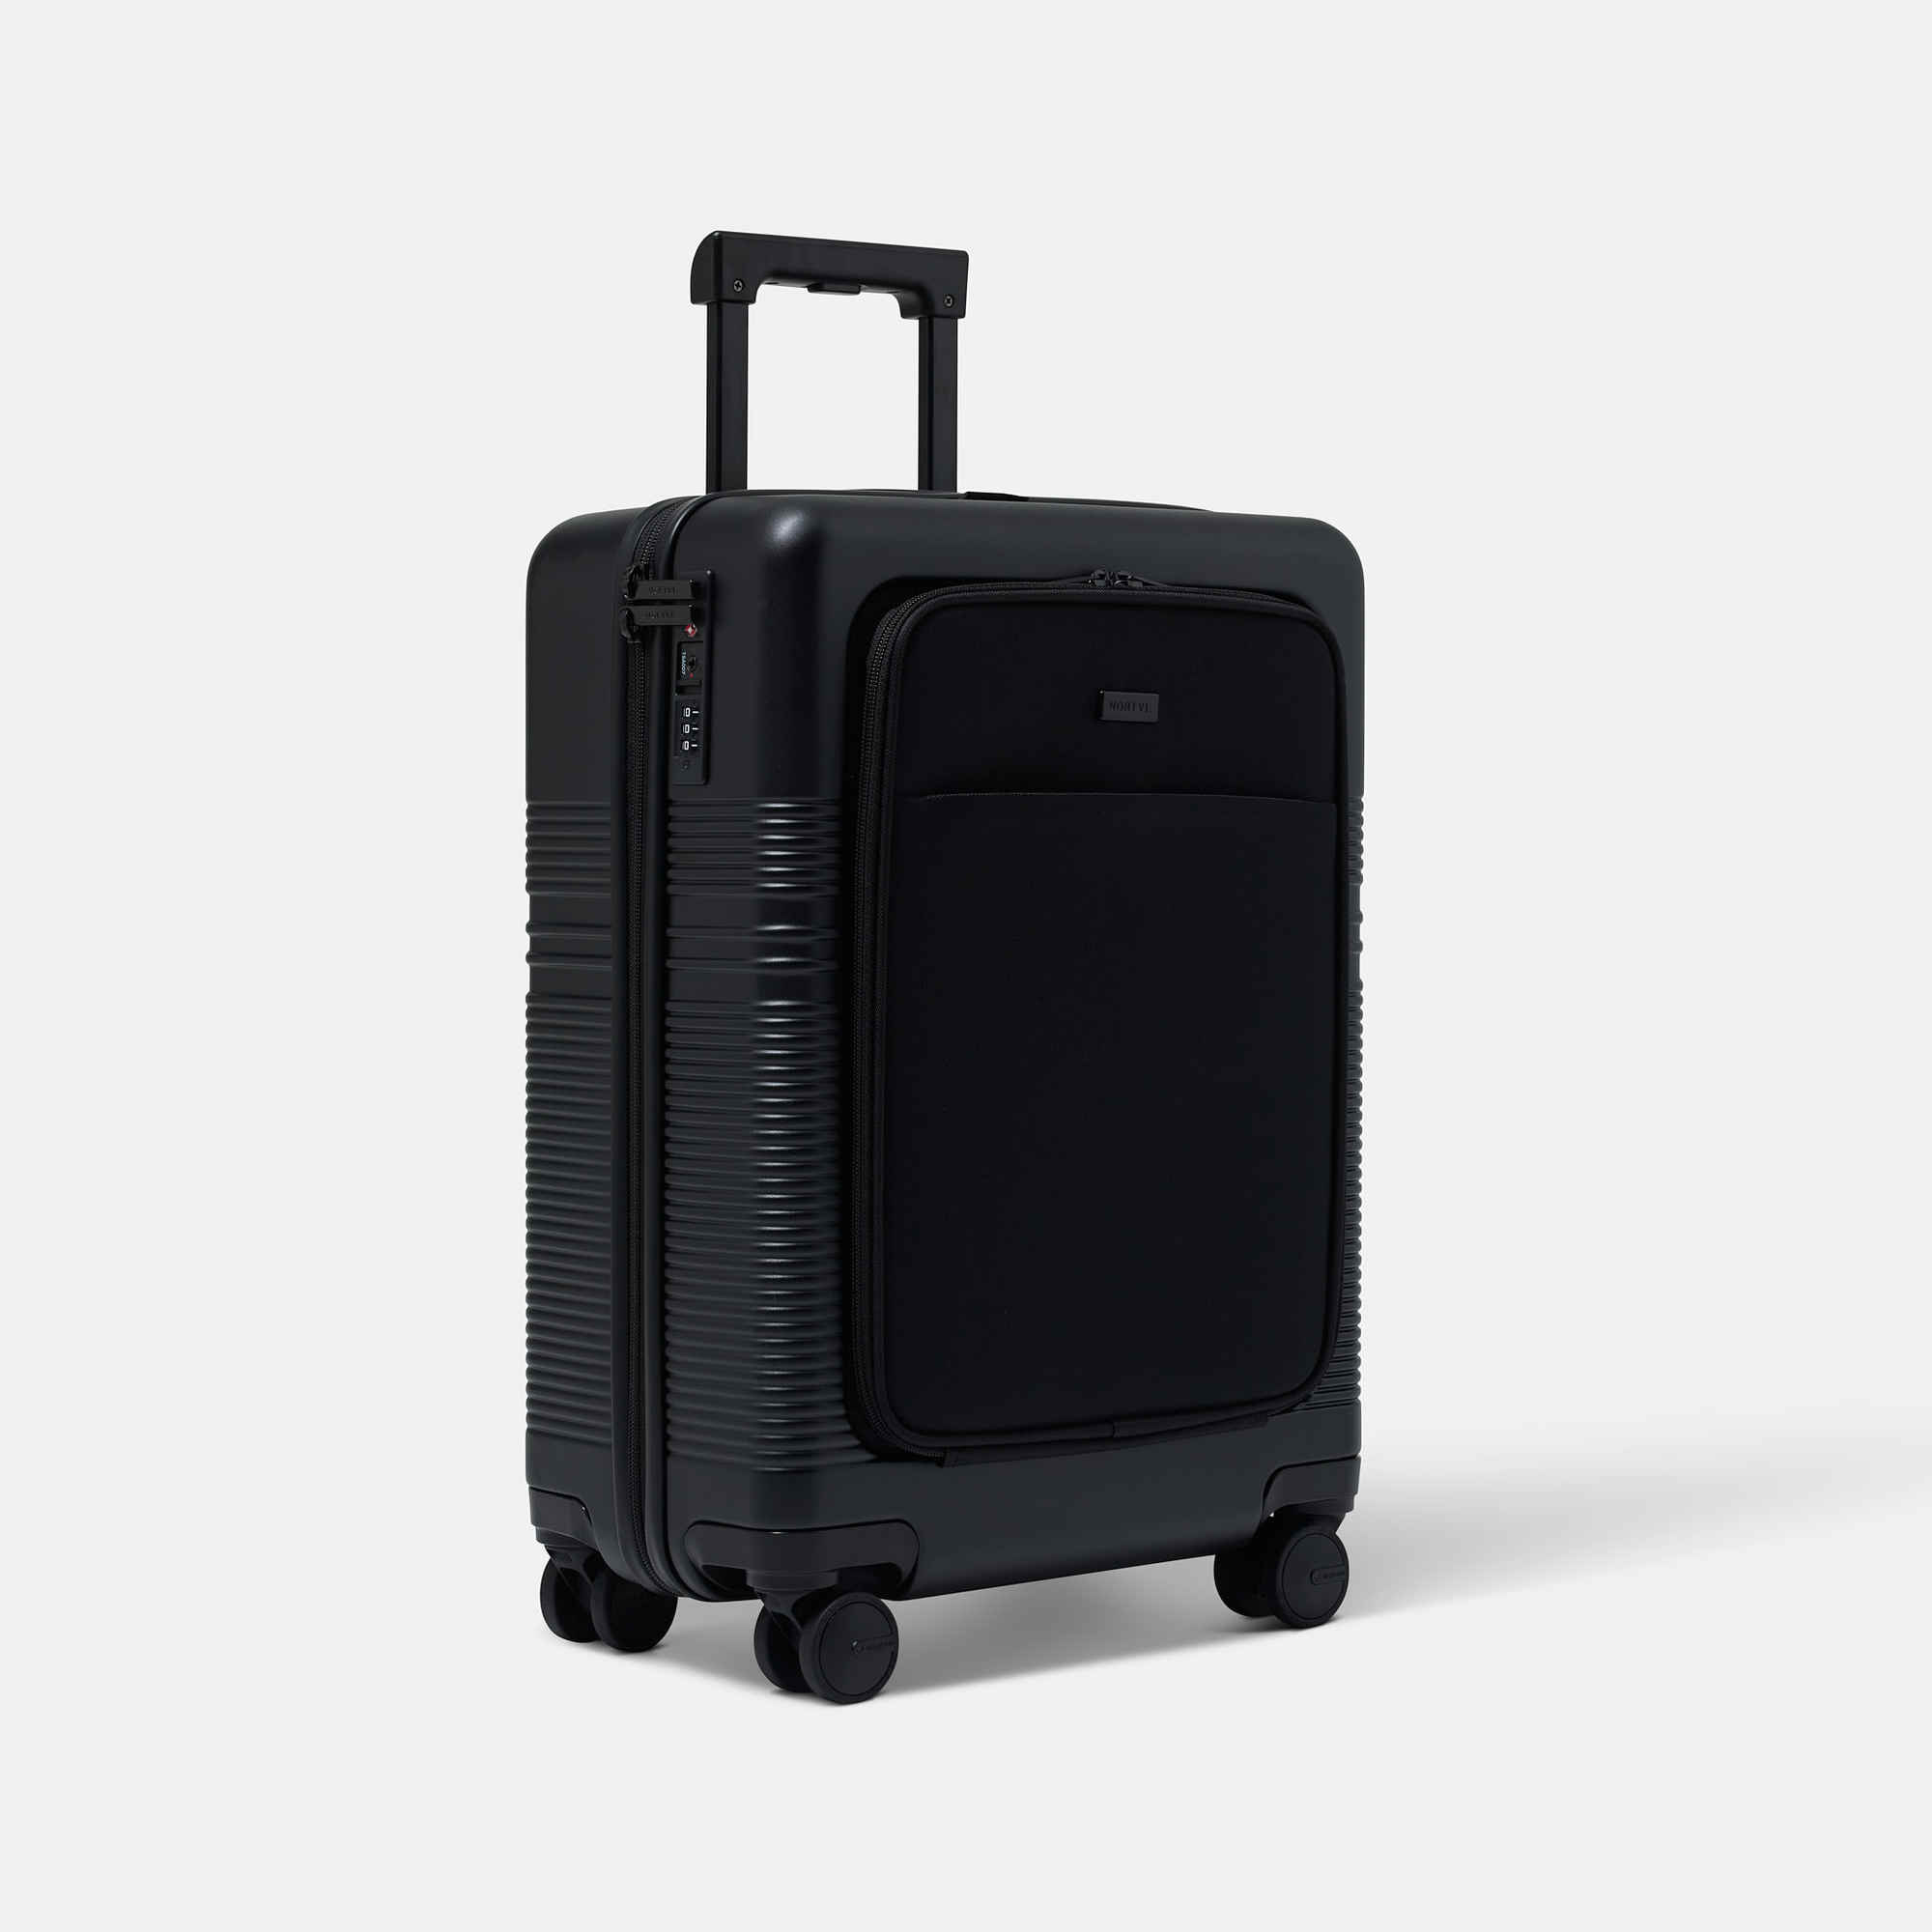 NORTVI sustainable design zwarte handbagage koffer, trolley suitcase gemaakt van duurzaam materiaal.